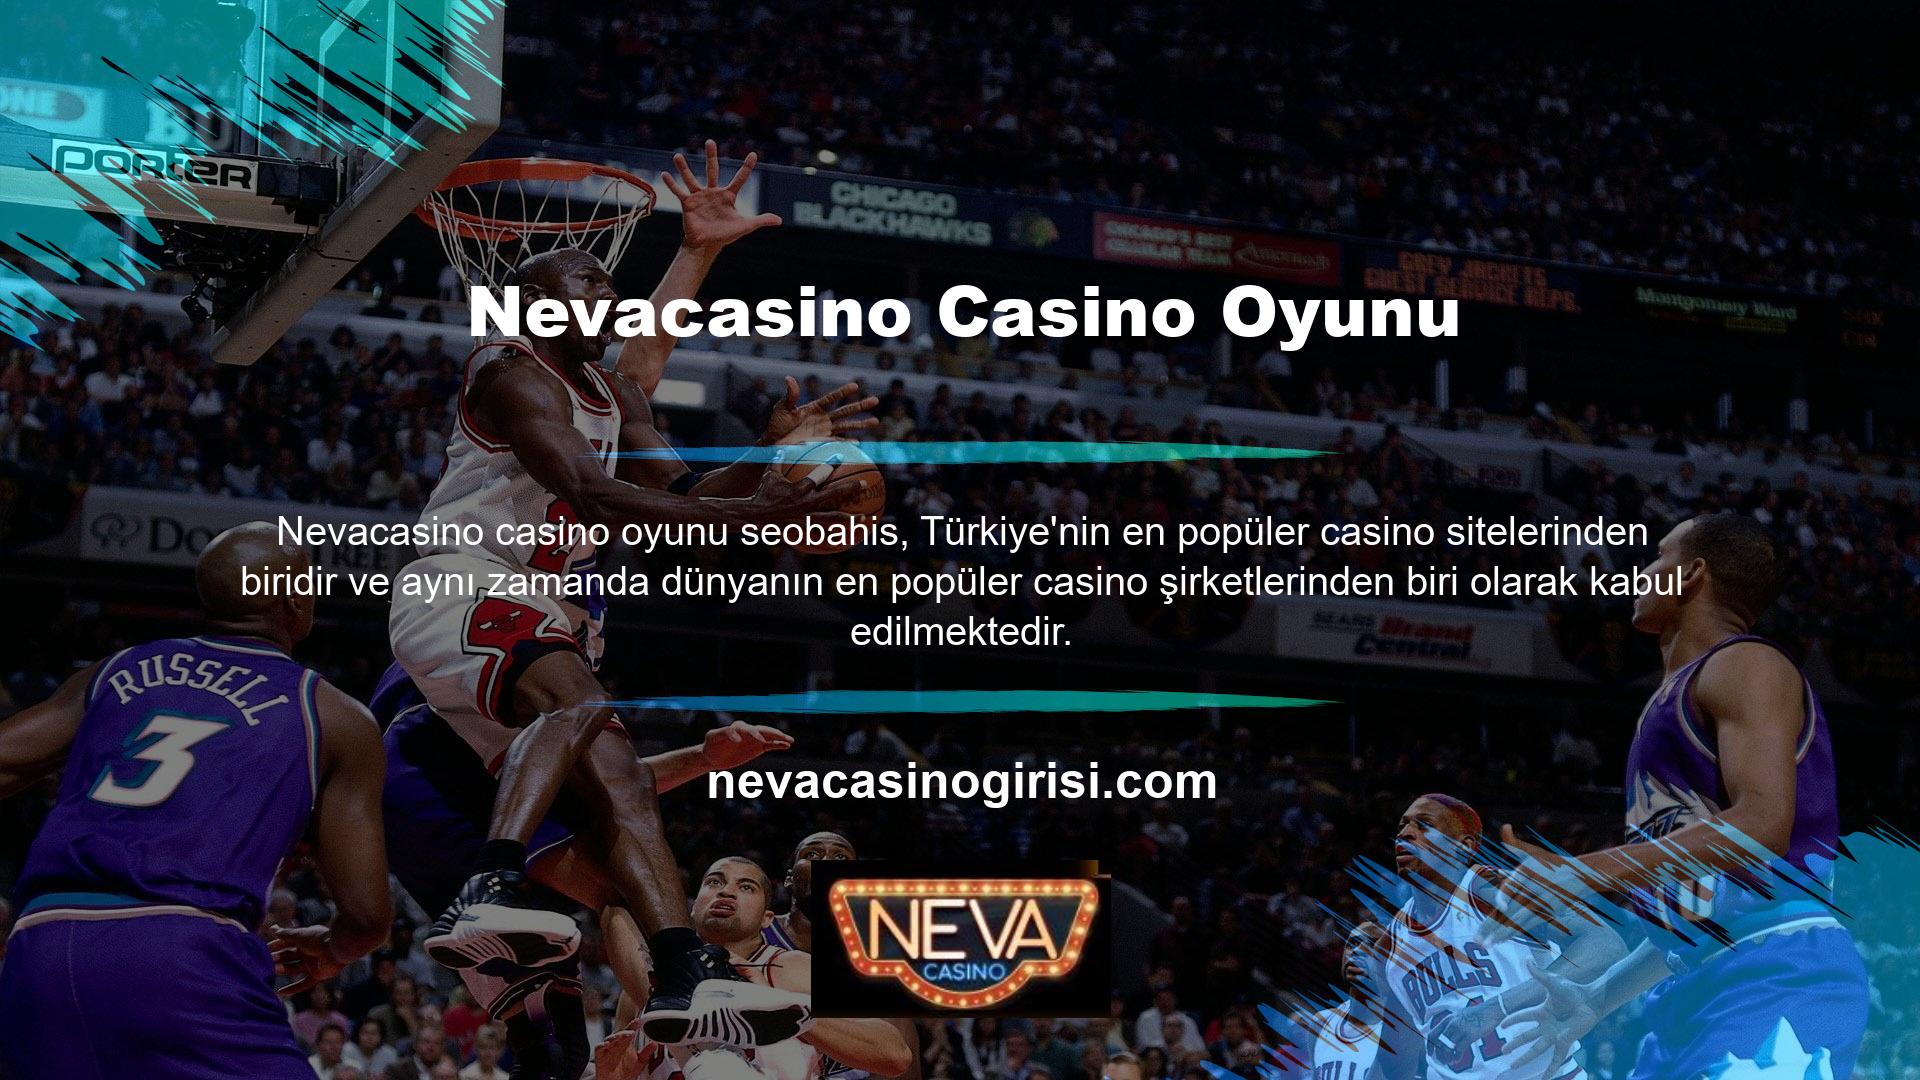 Nevacasino, Twitter üzerinden futbol gibi spor etkinliklerinin yanı sıra canlı casino oyunlarına da bahis yapmaktadır